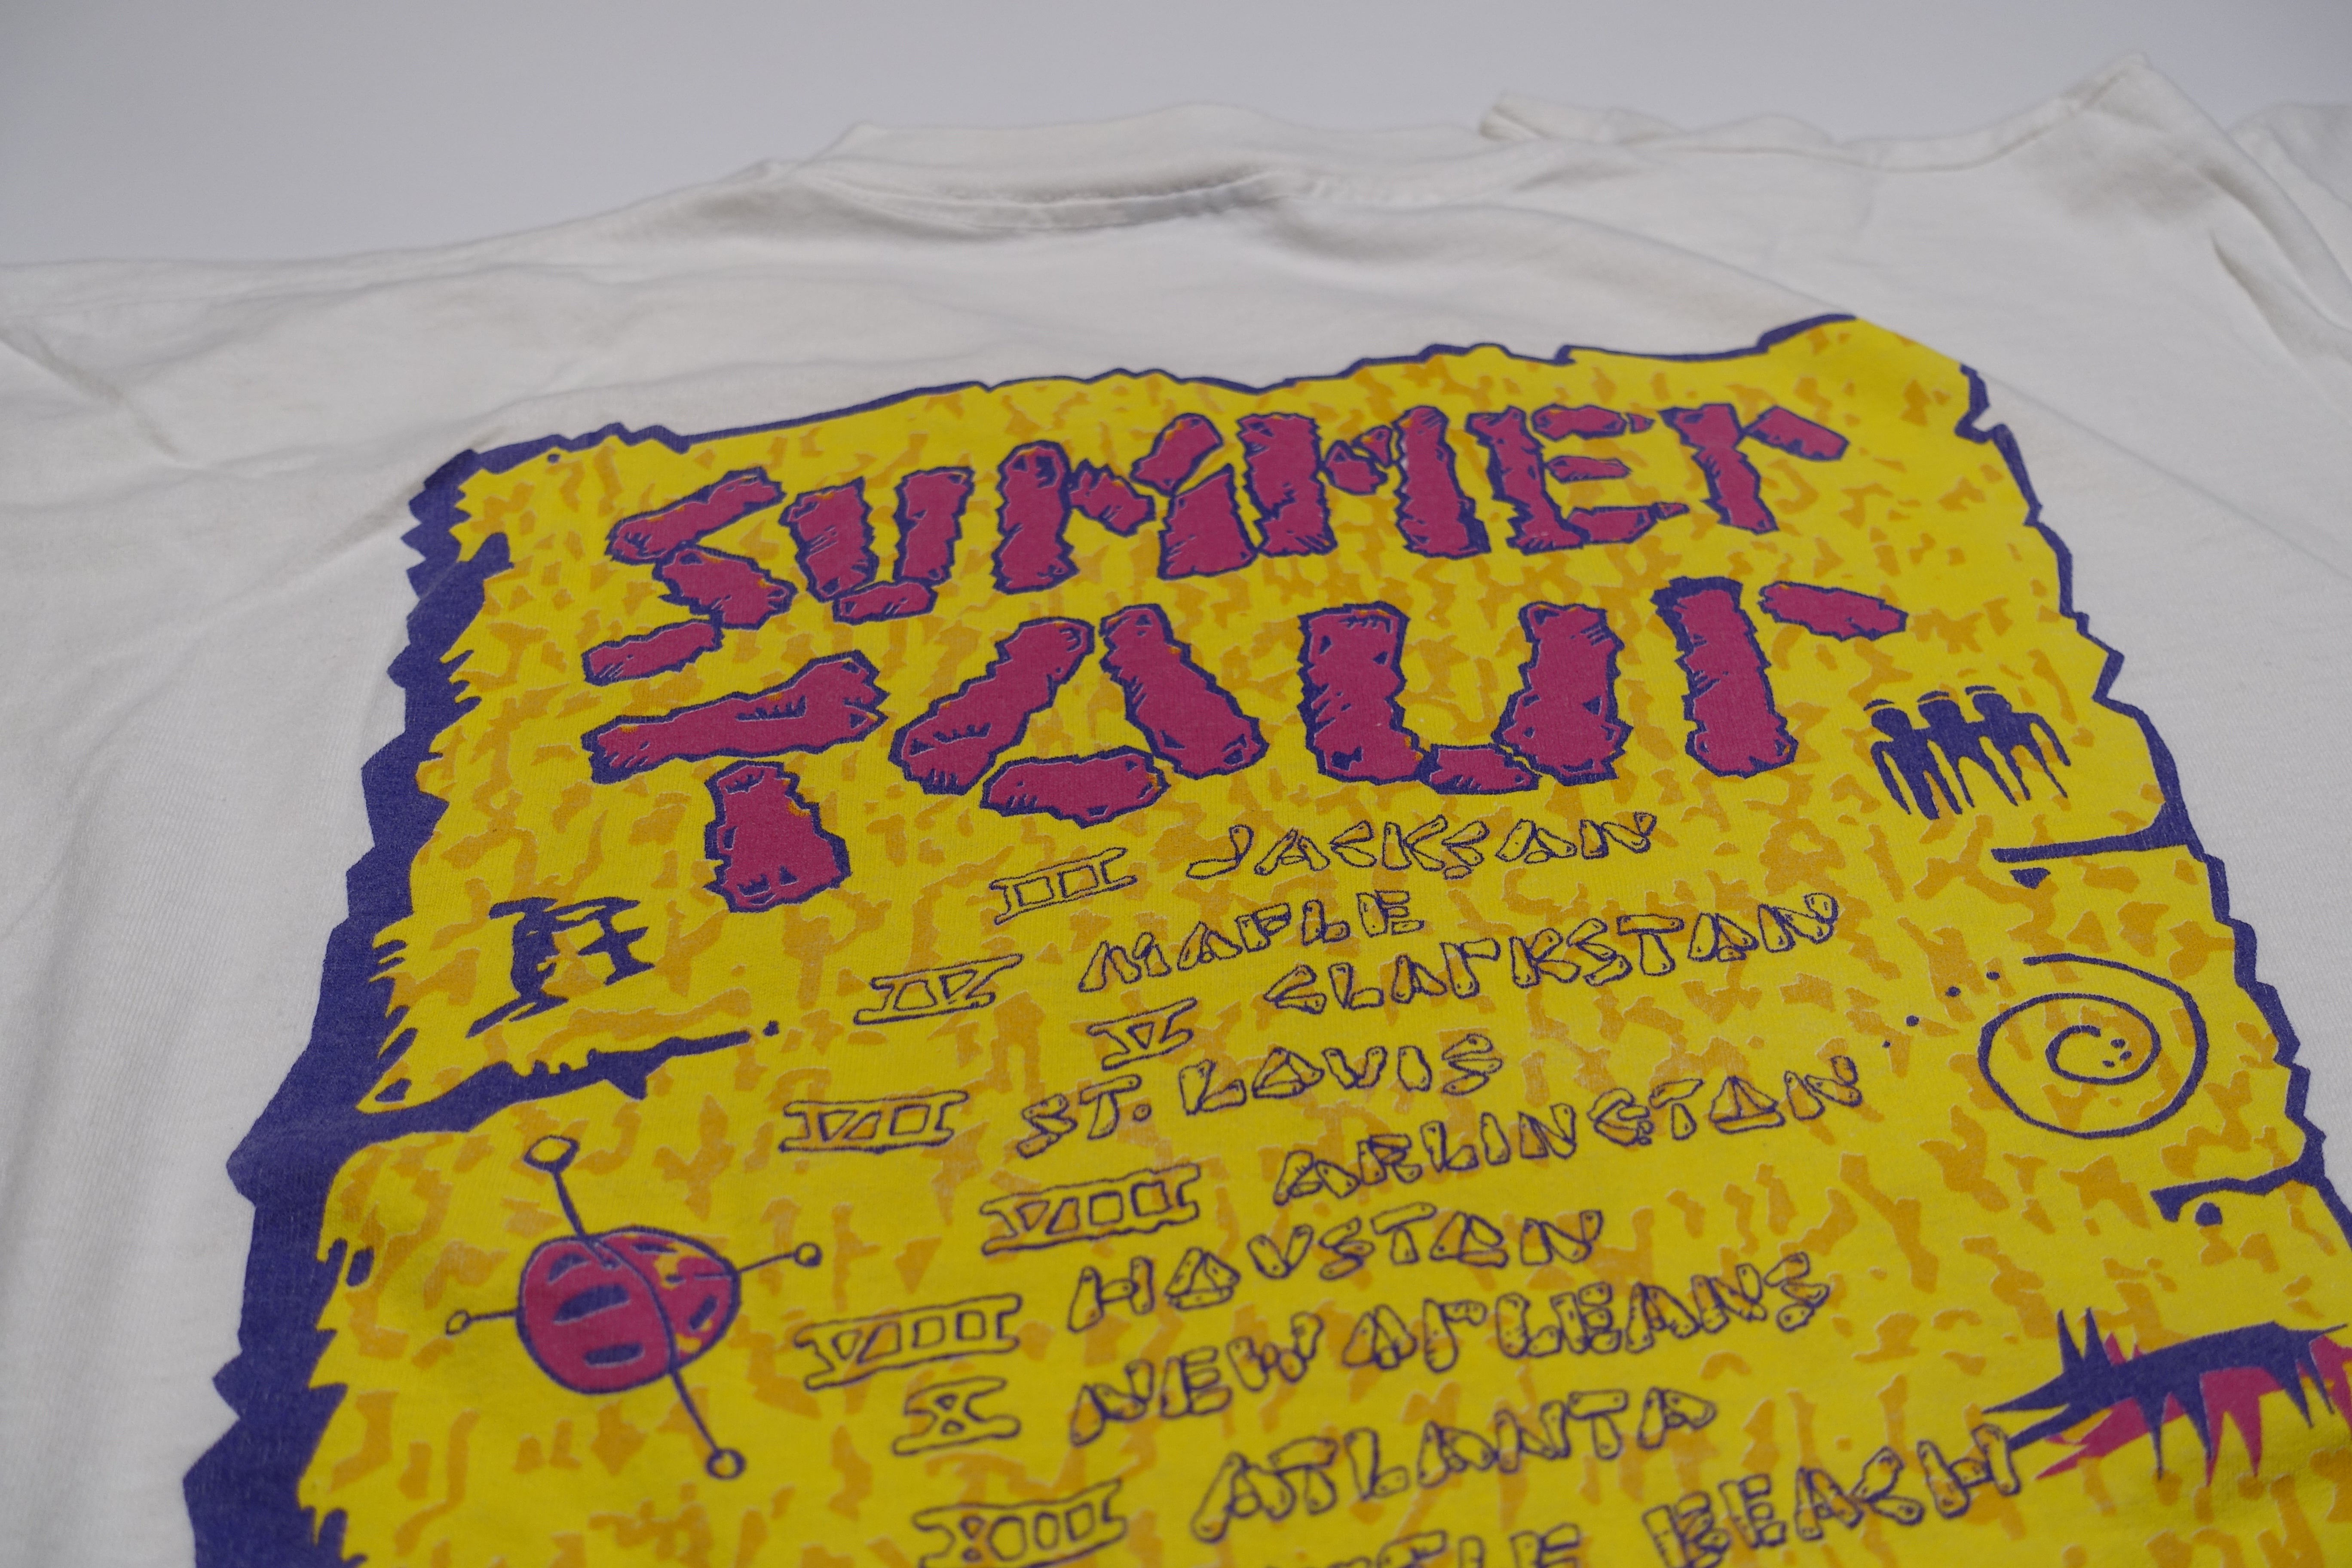 B-52's - Summer 1994 Tour Shirt Size XL